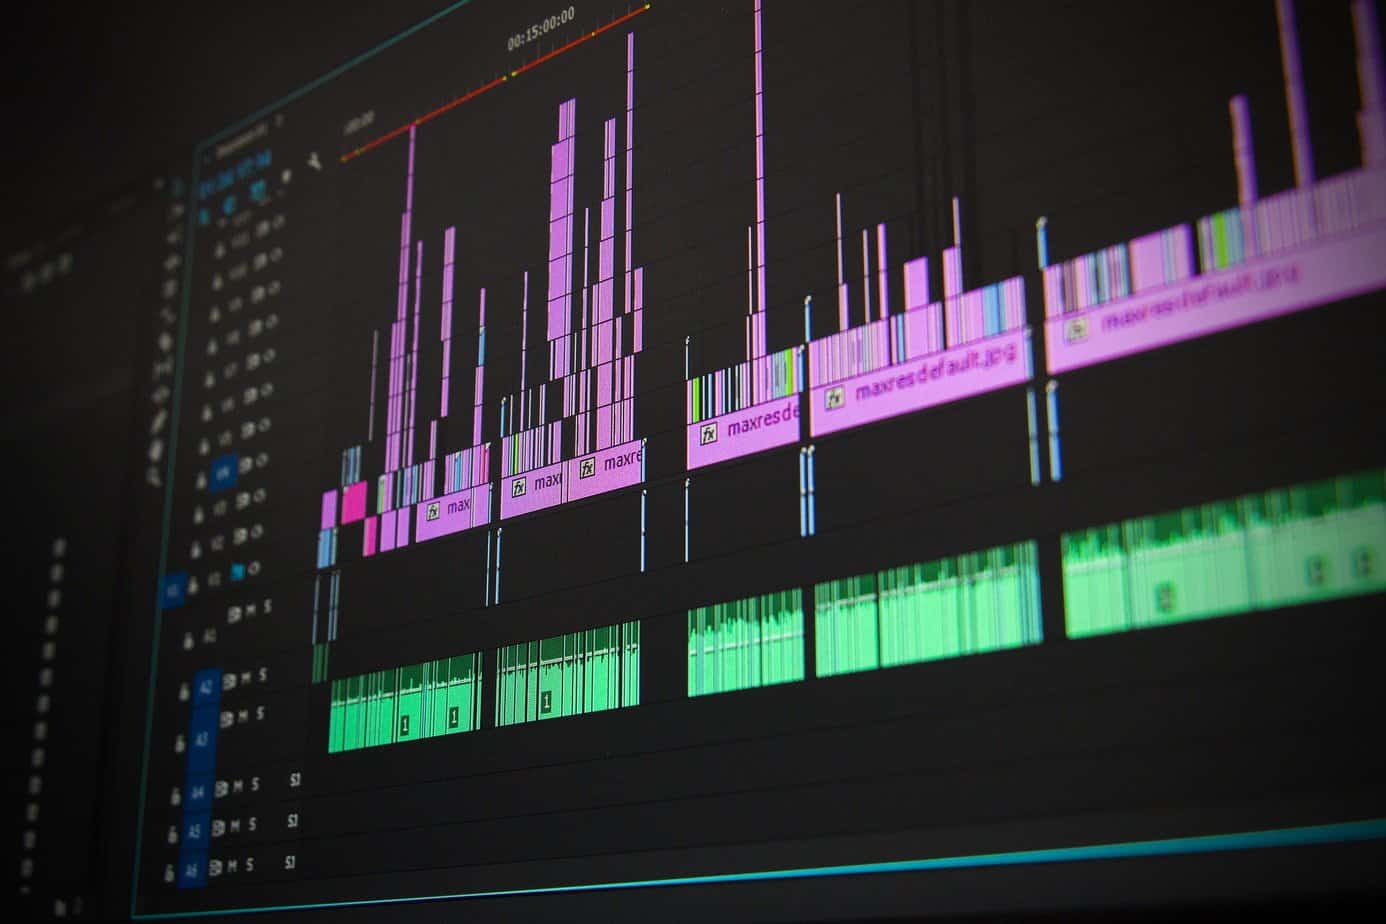 Adobe Premiere Pro Complete Video Editing Masterclass 2020